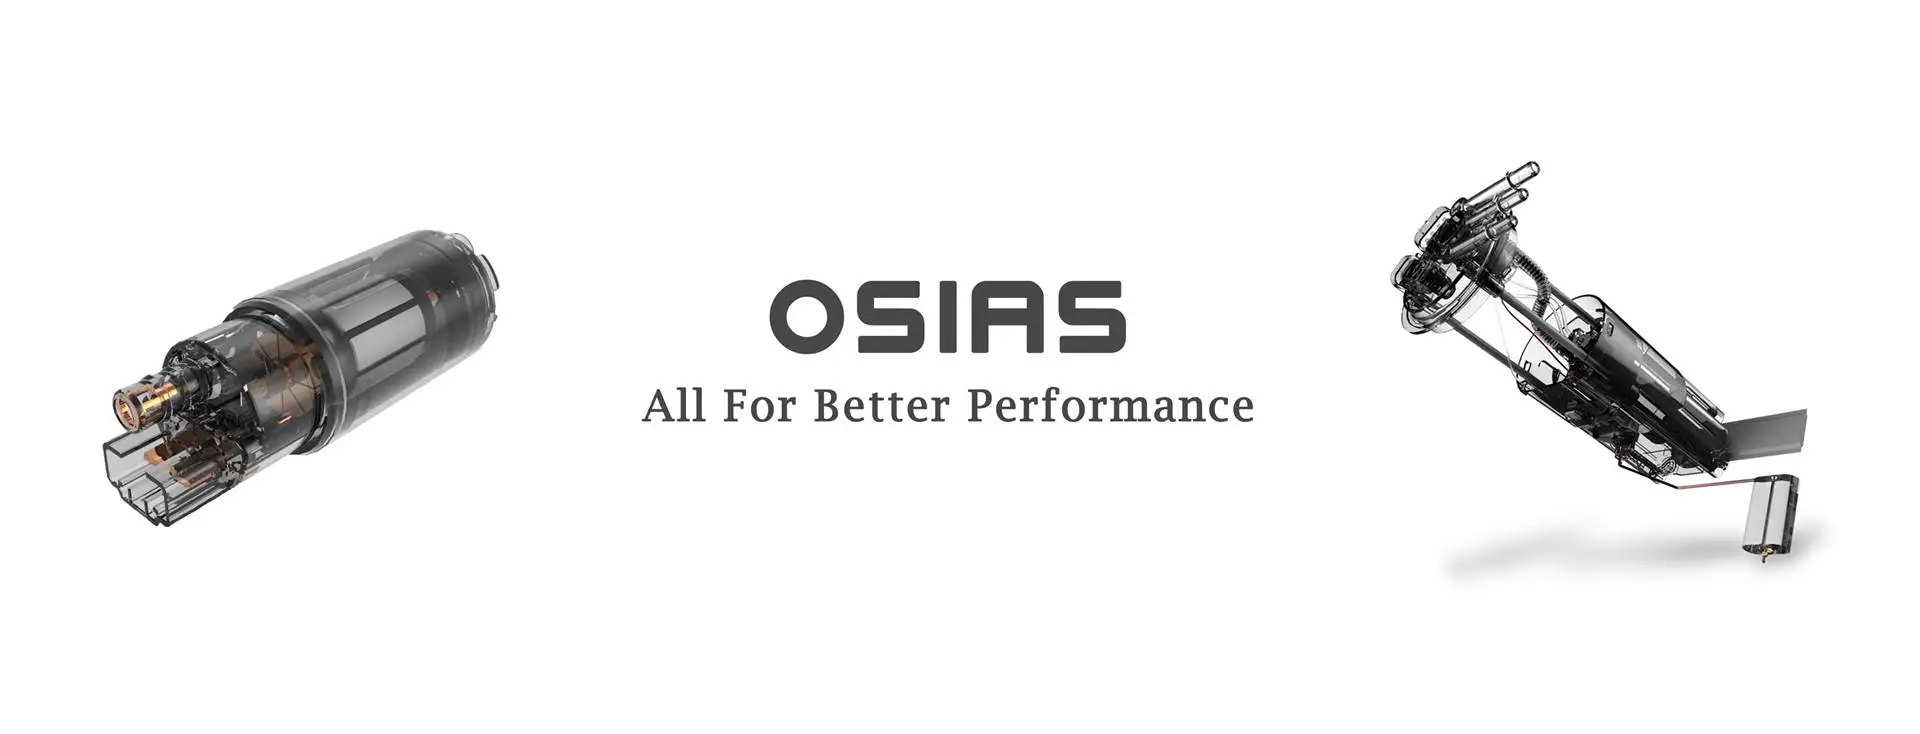 OSIAS модуль топливного насоса в сборе E2469M для 06 07 08 09 FORD MUSTANG 4.0L& 4.6L из США и Китая